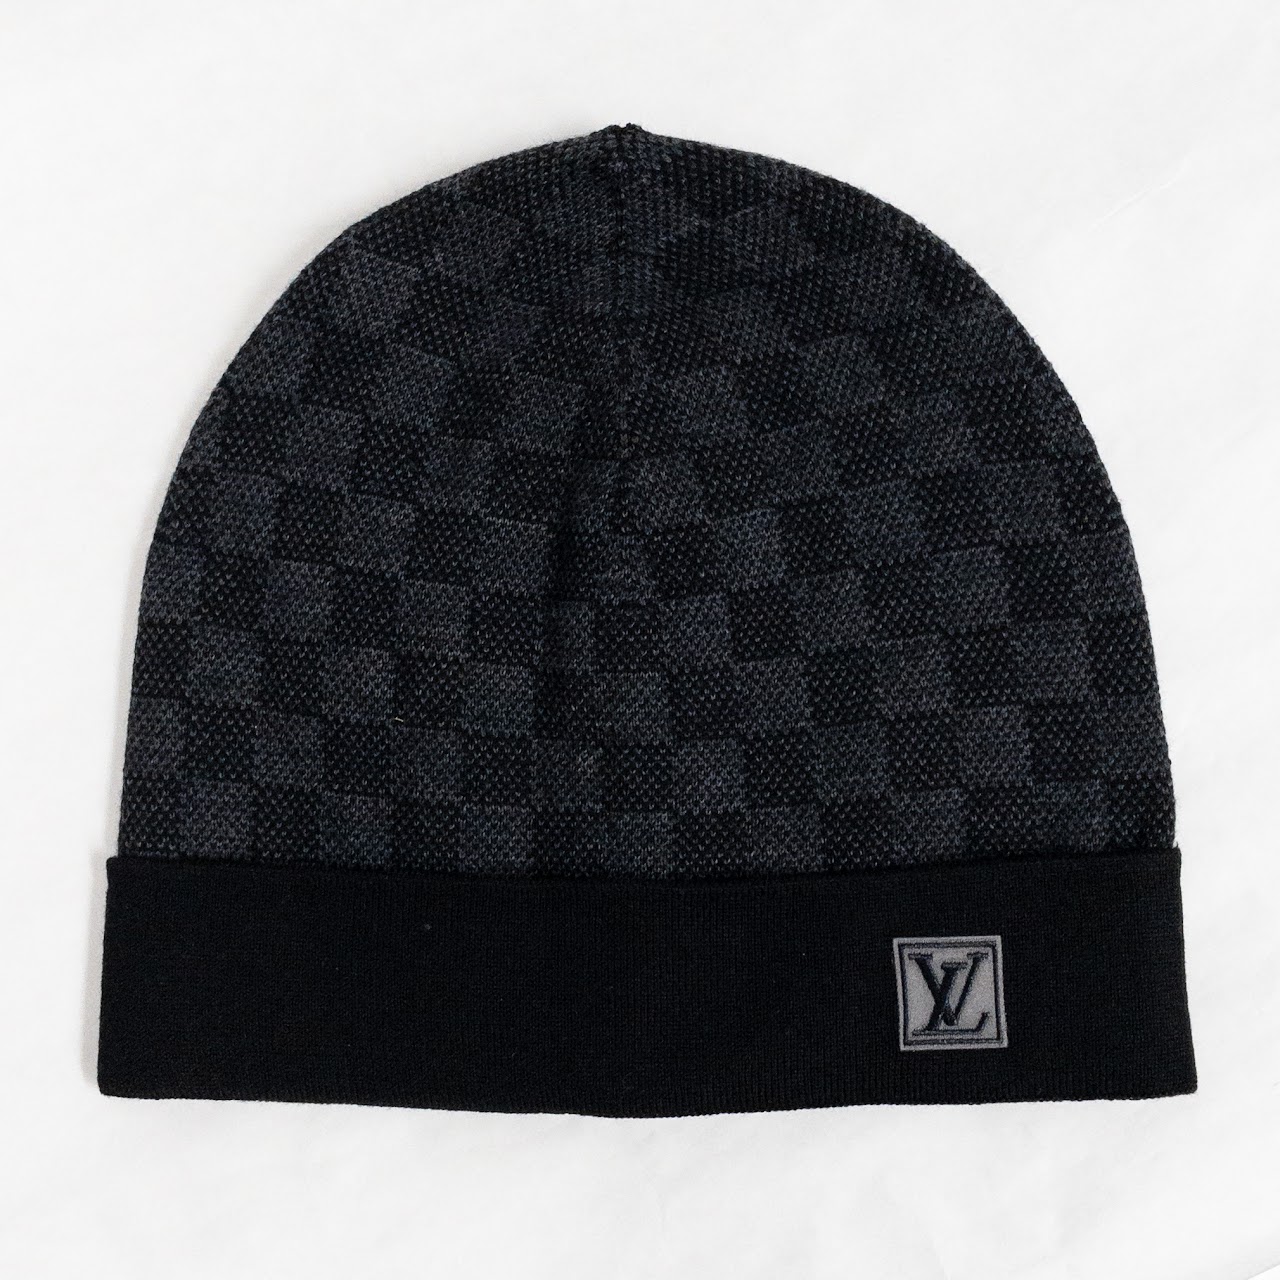 LOUIS VUITTON PETIT DAMIER HAT (Black/Graphite) £170.00 - PicClick UK